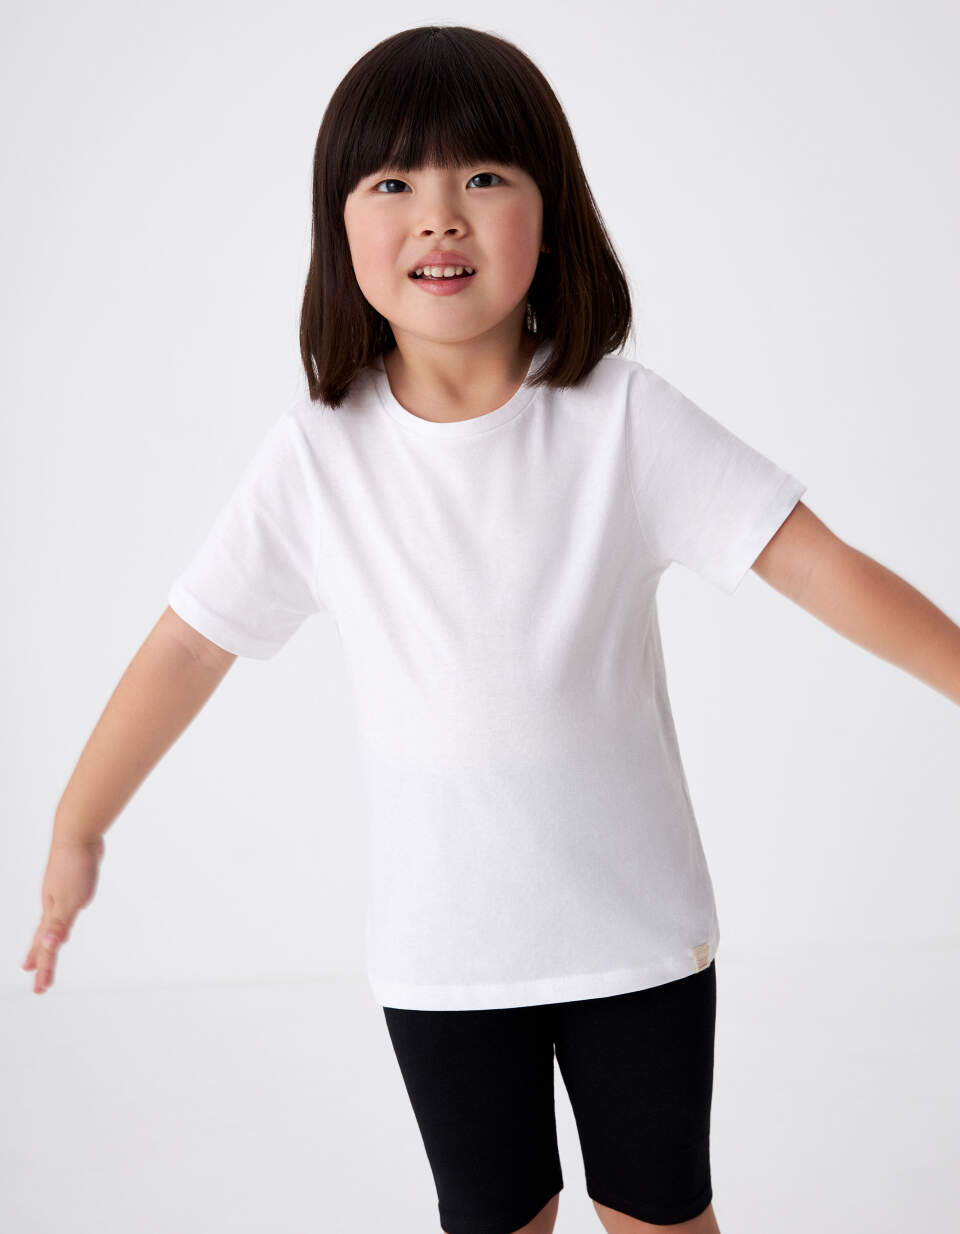 Базовая белая футболка для девочек